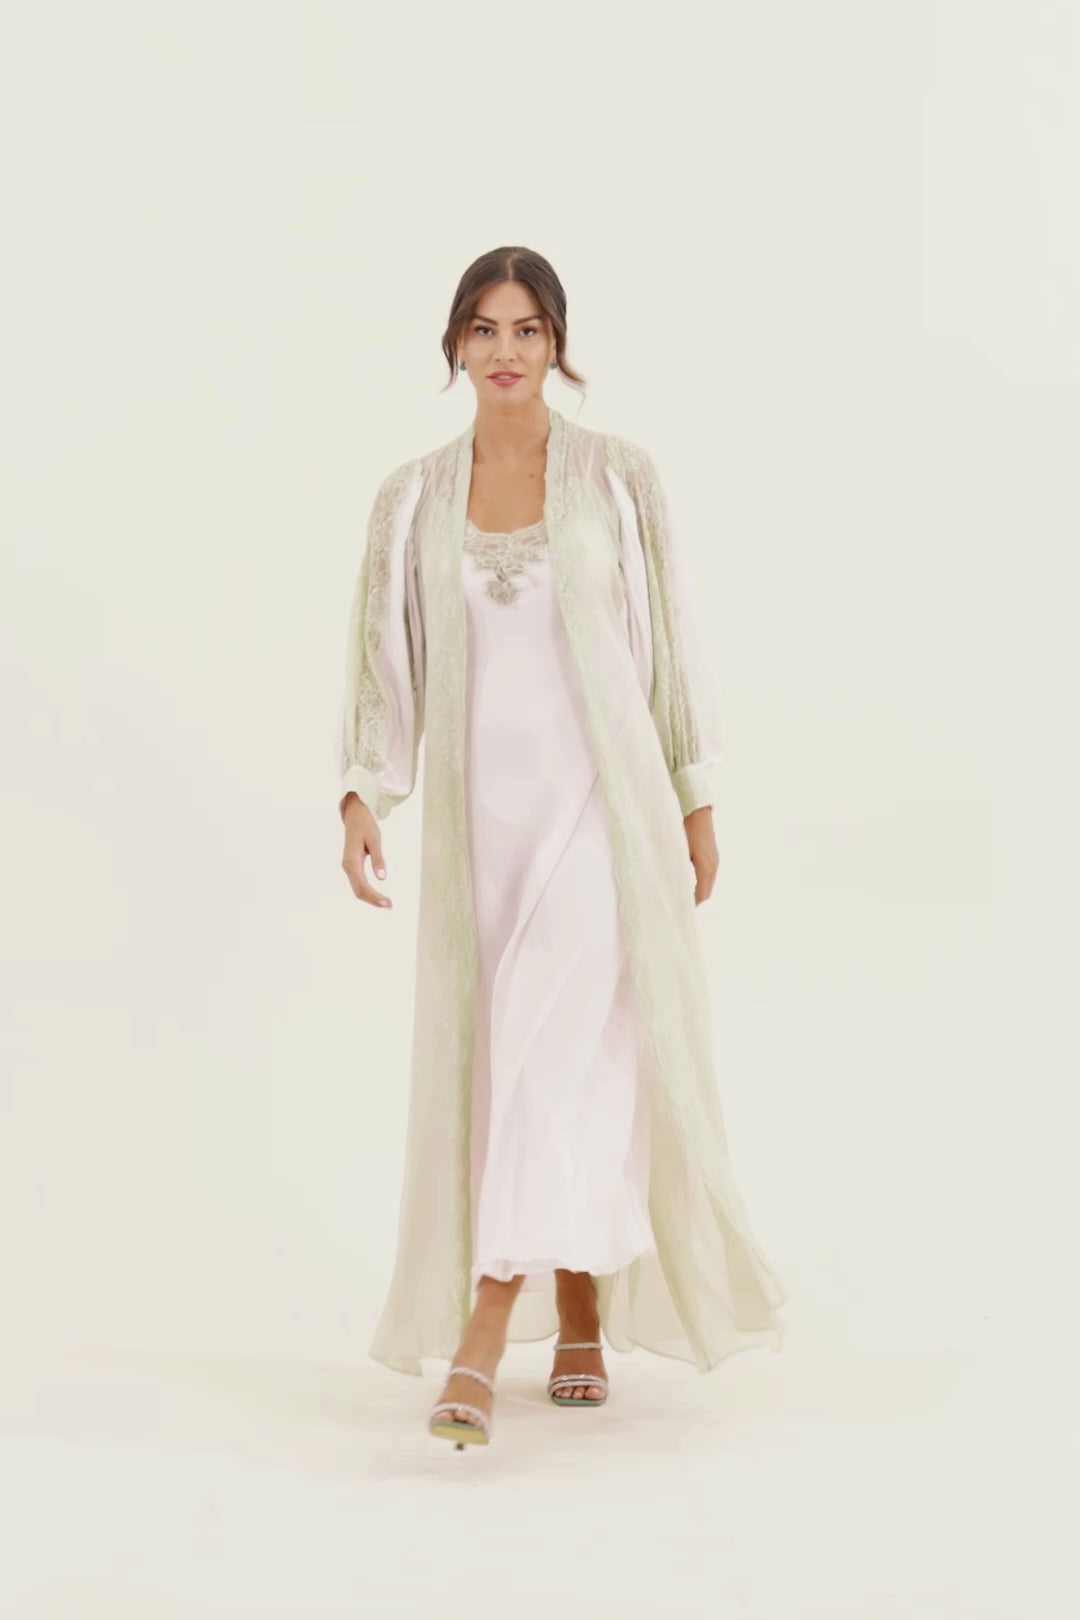 Carina Long Silk Chiffon Robe Set - Sage Green Lace on Light Pink